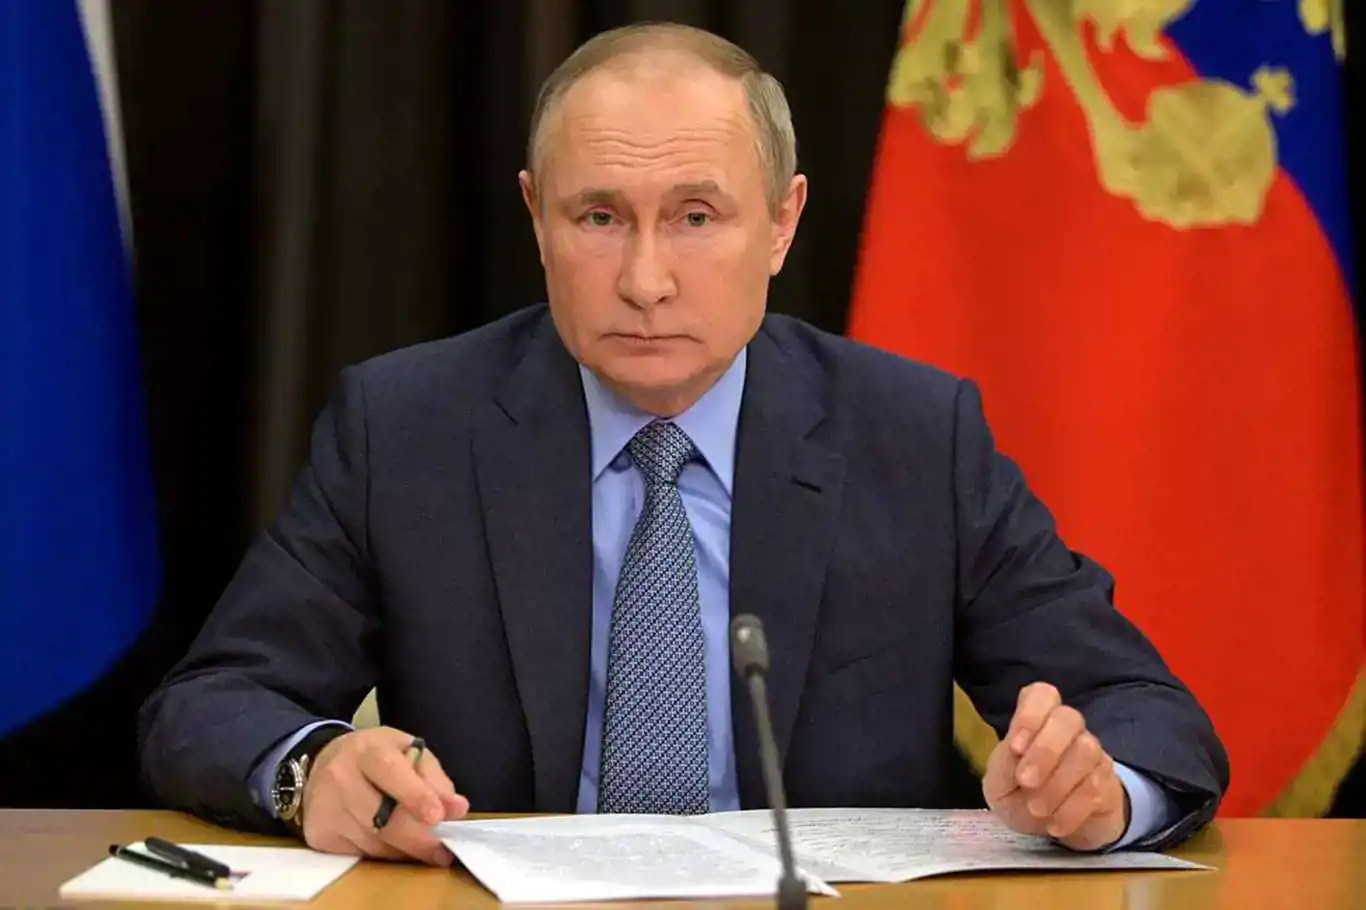 Russia’s Putin to visit Kyrgyzstan next week